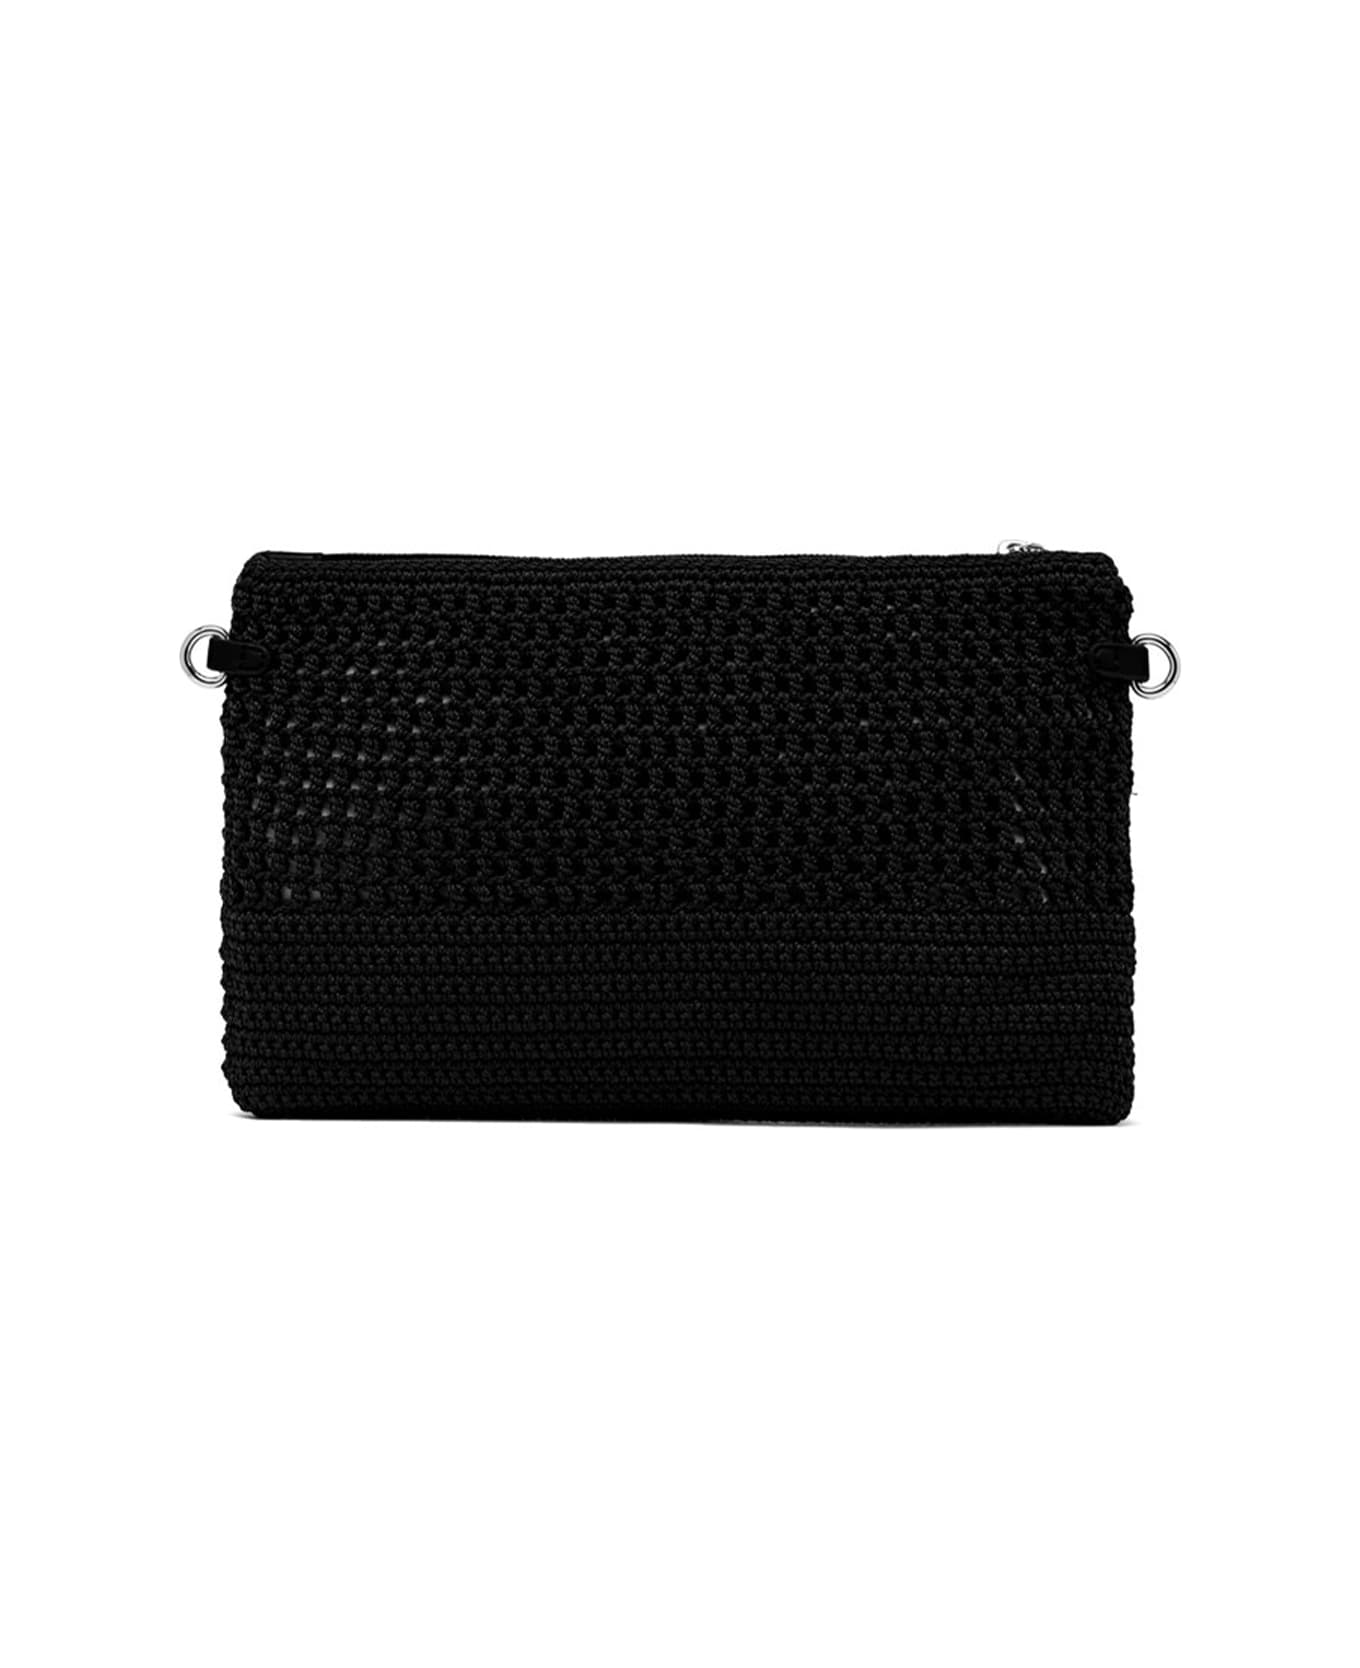 Gianni Chiarini Black Victoria Clutch Bag In Crochet Fabric - NERO